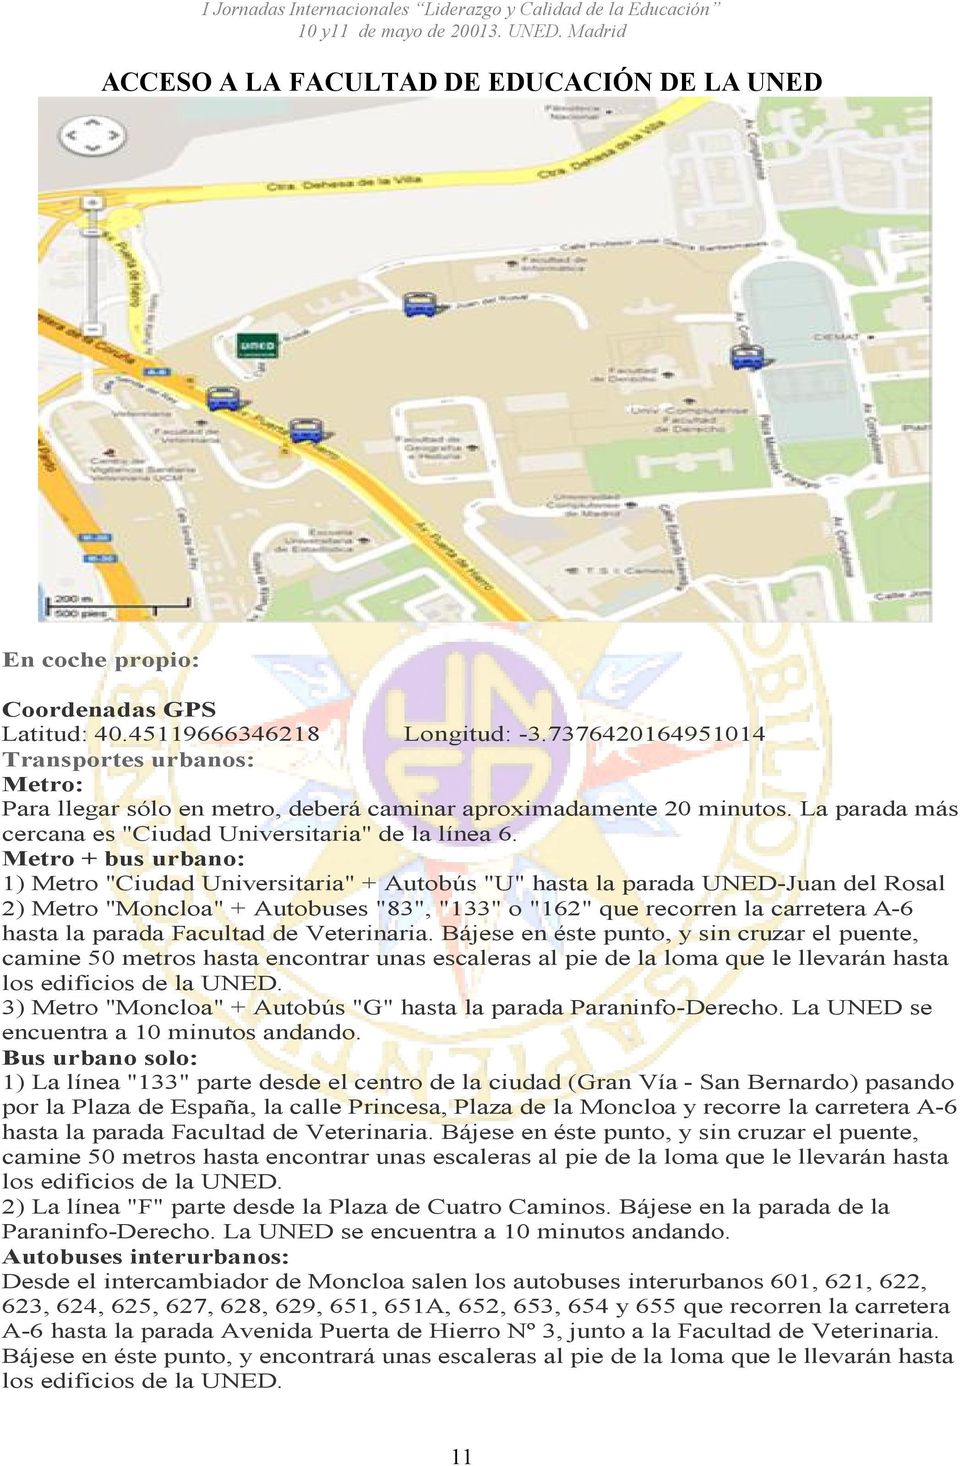 Metro + bus urbano: 1) Metro "Ciudad Universitaria" + Autobús "U" hasta la parada UNED-Juan del Rosal 2) Metro "Moncloa" + Autobuses "83", "133" o "162" que recorren la carretera A-6 hasta la parada